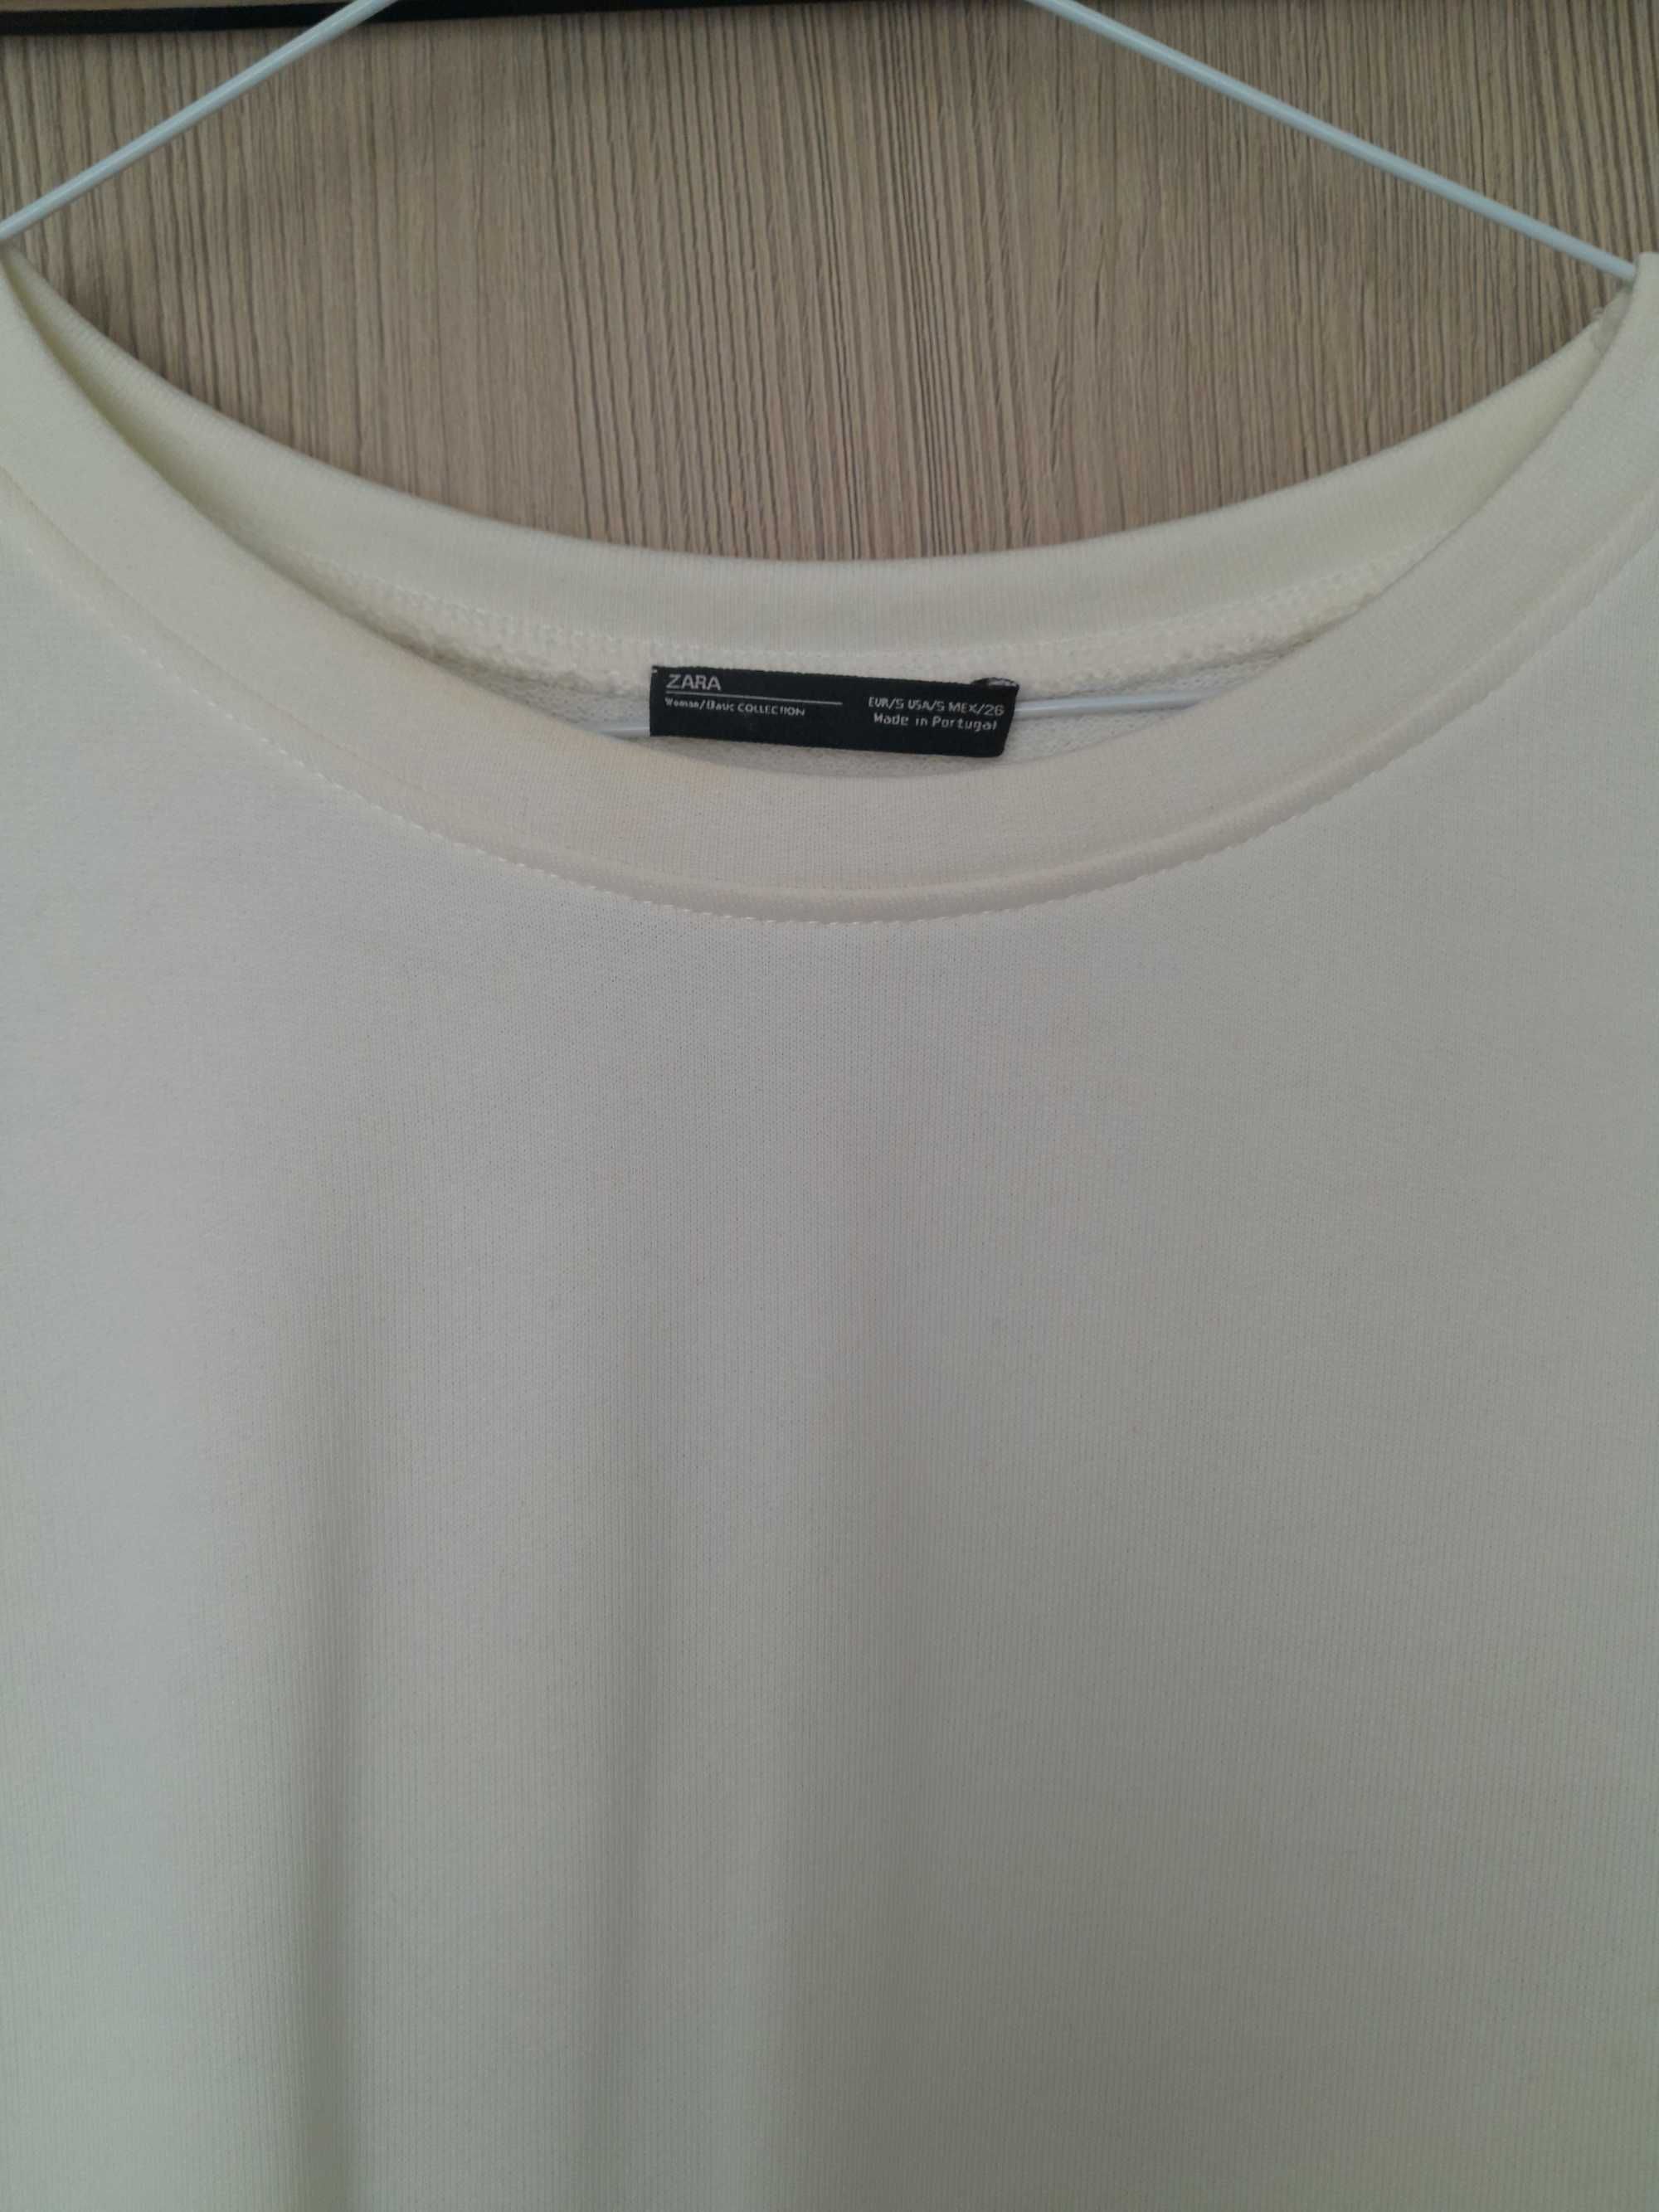 Sukienka Zara kremowa mini wstażki dresowa oversize 36